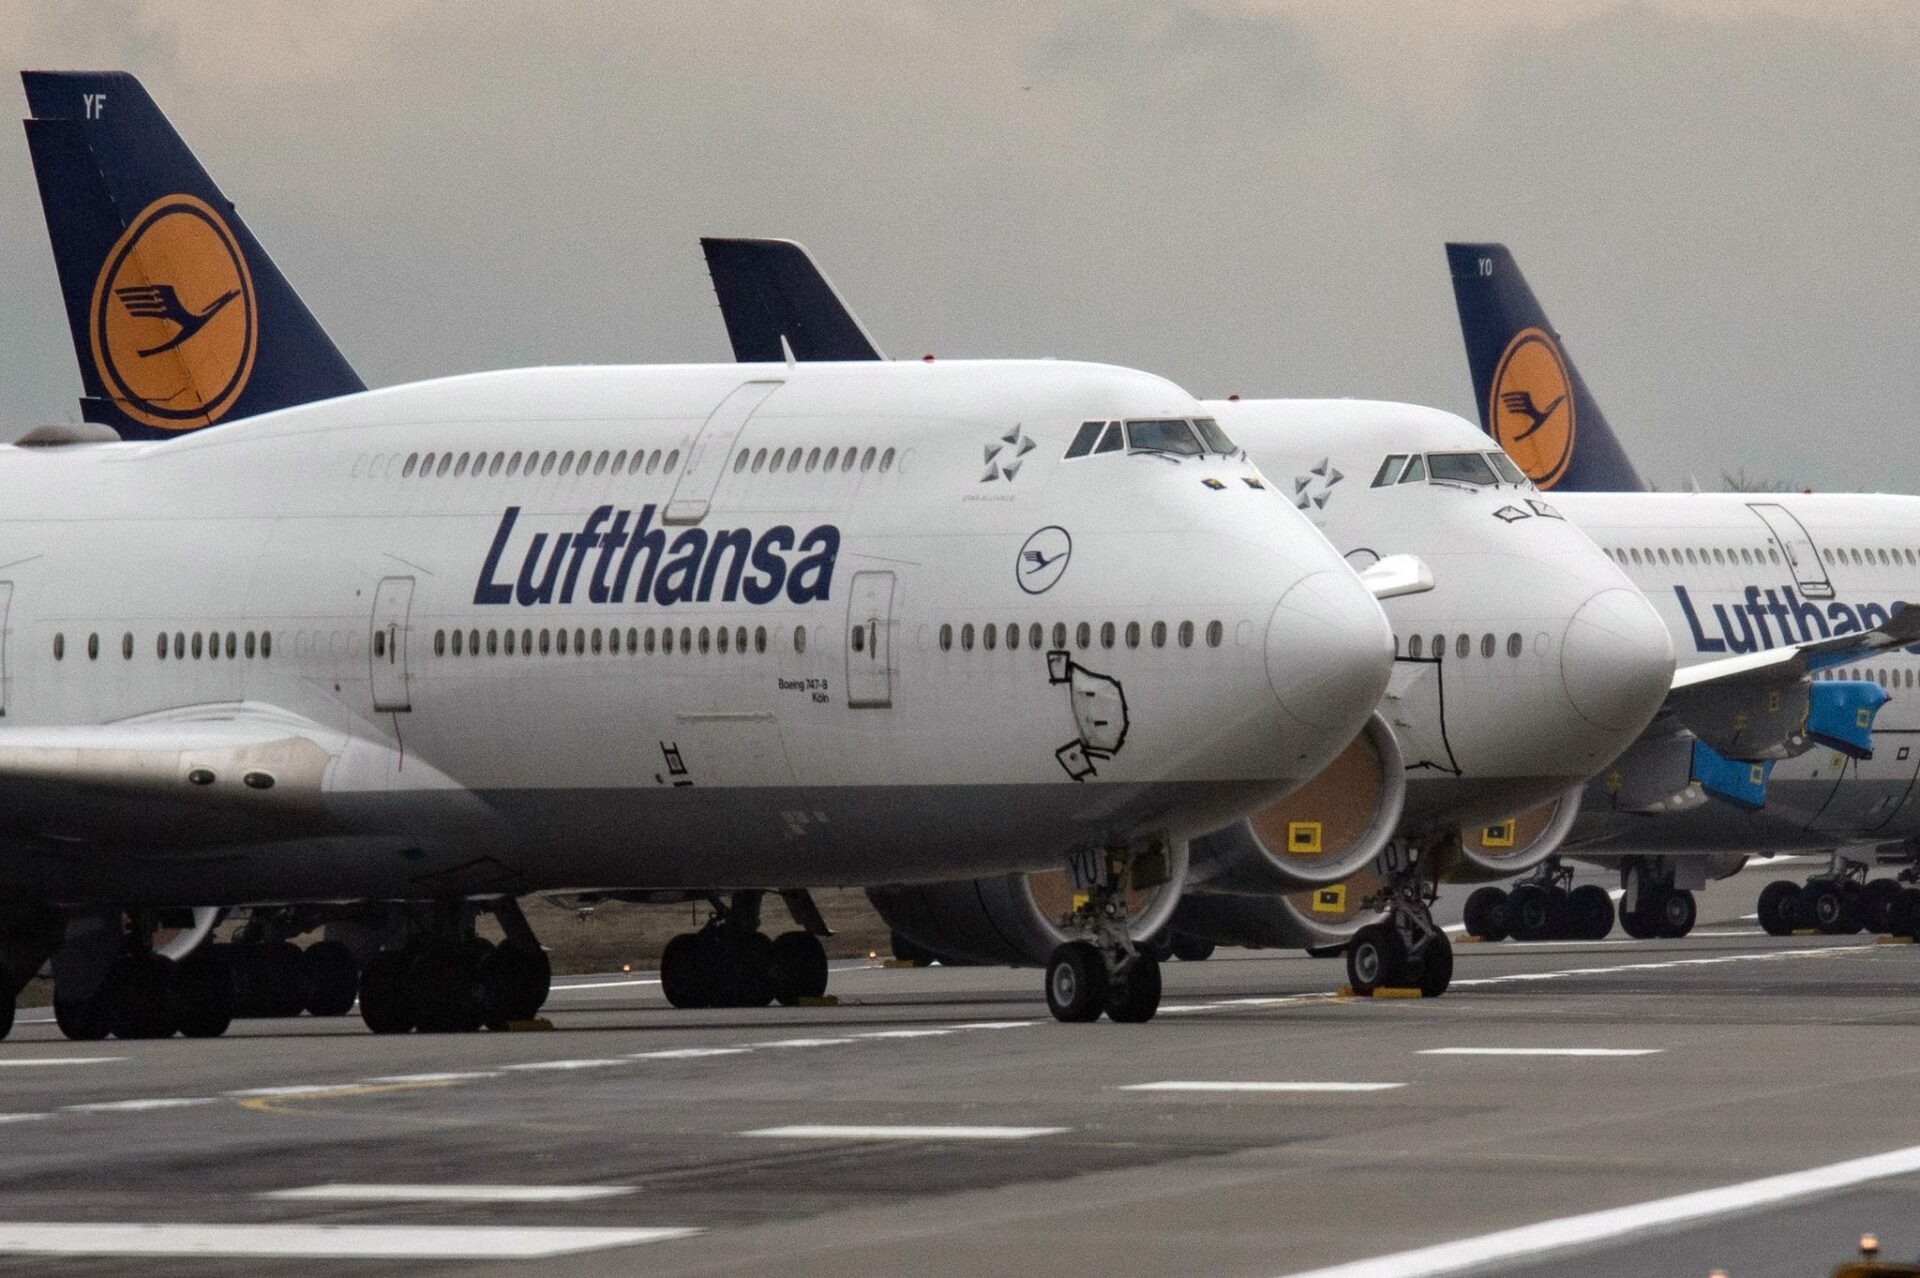 Lufthansa-Jets vom Typ Boeing 747 stehen auf der Landebahn Nordwest des Flughafens Frankfurt. Der juristische Streit um die milliardenschweren Corona-Staatshilfen für die Lufthansa geht weiter.